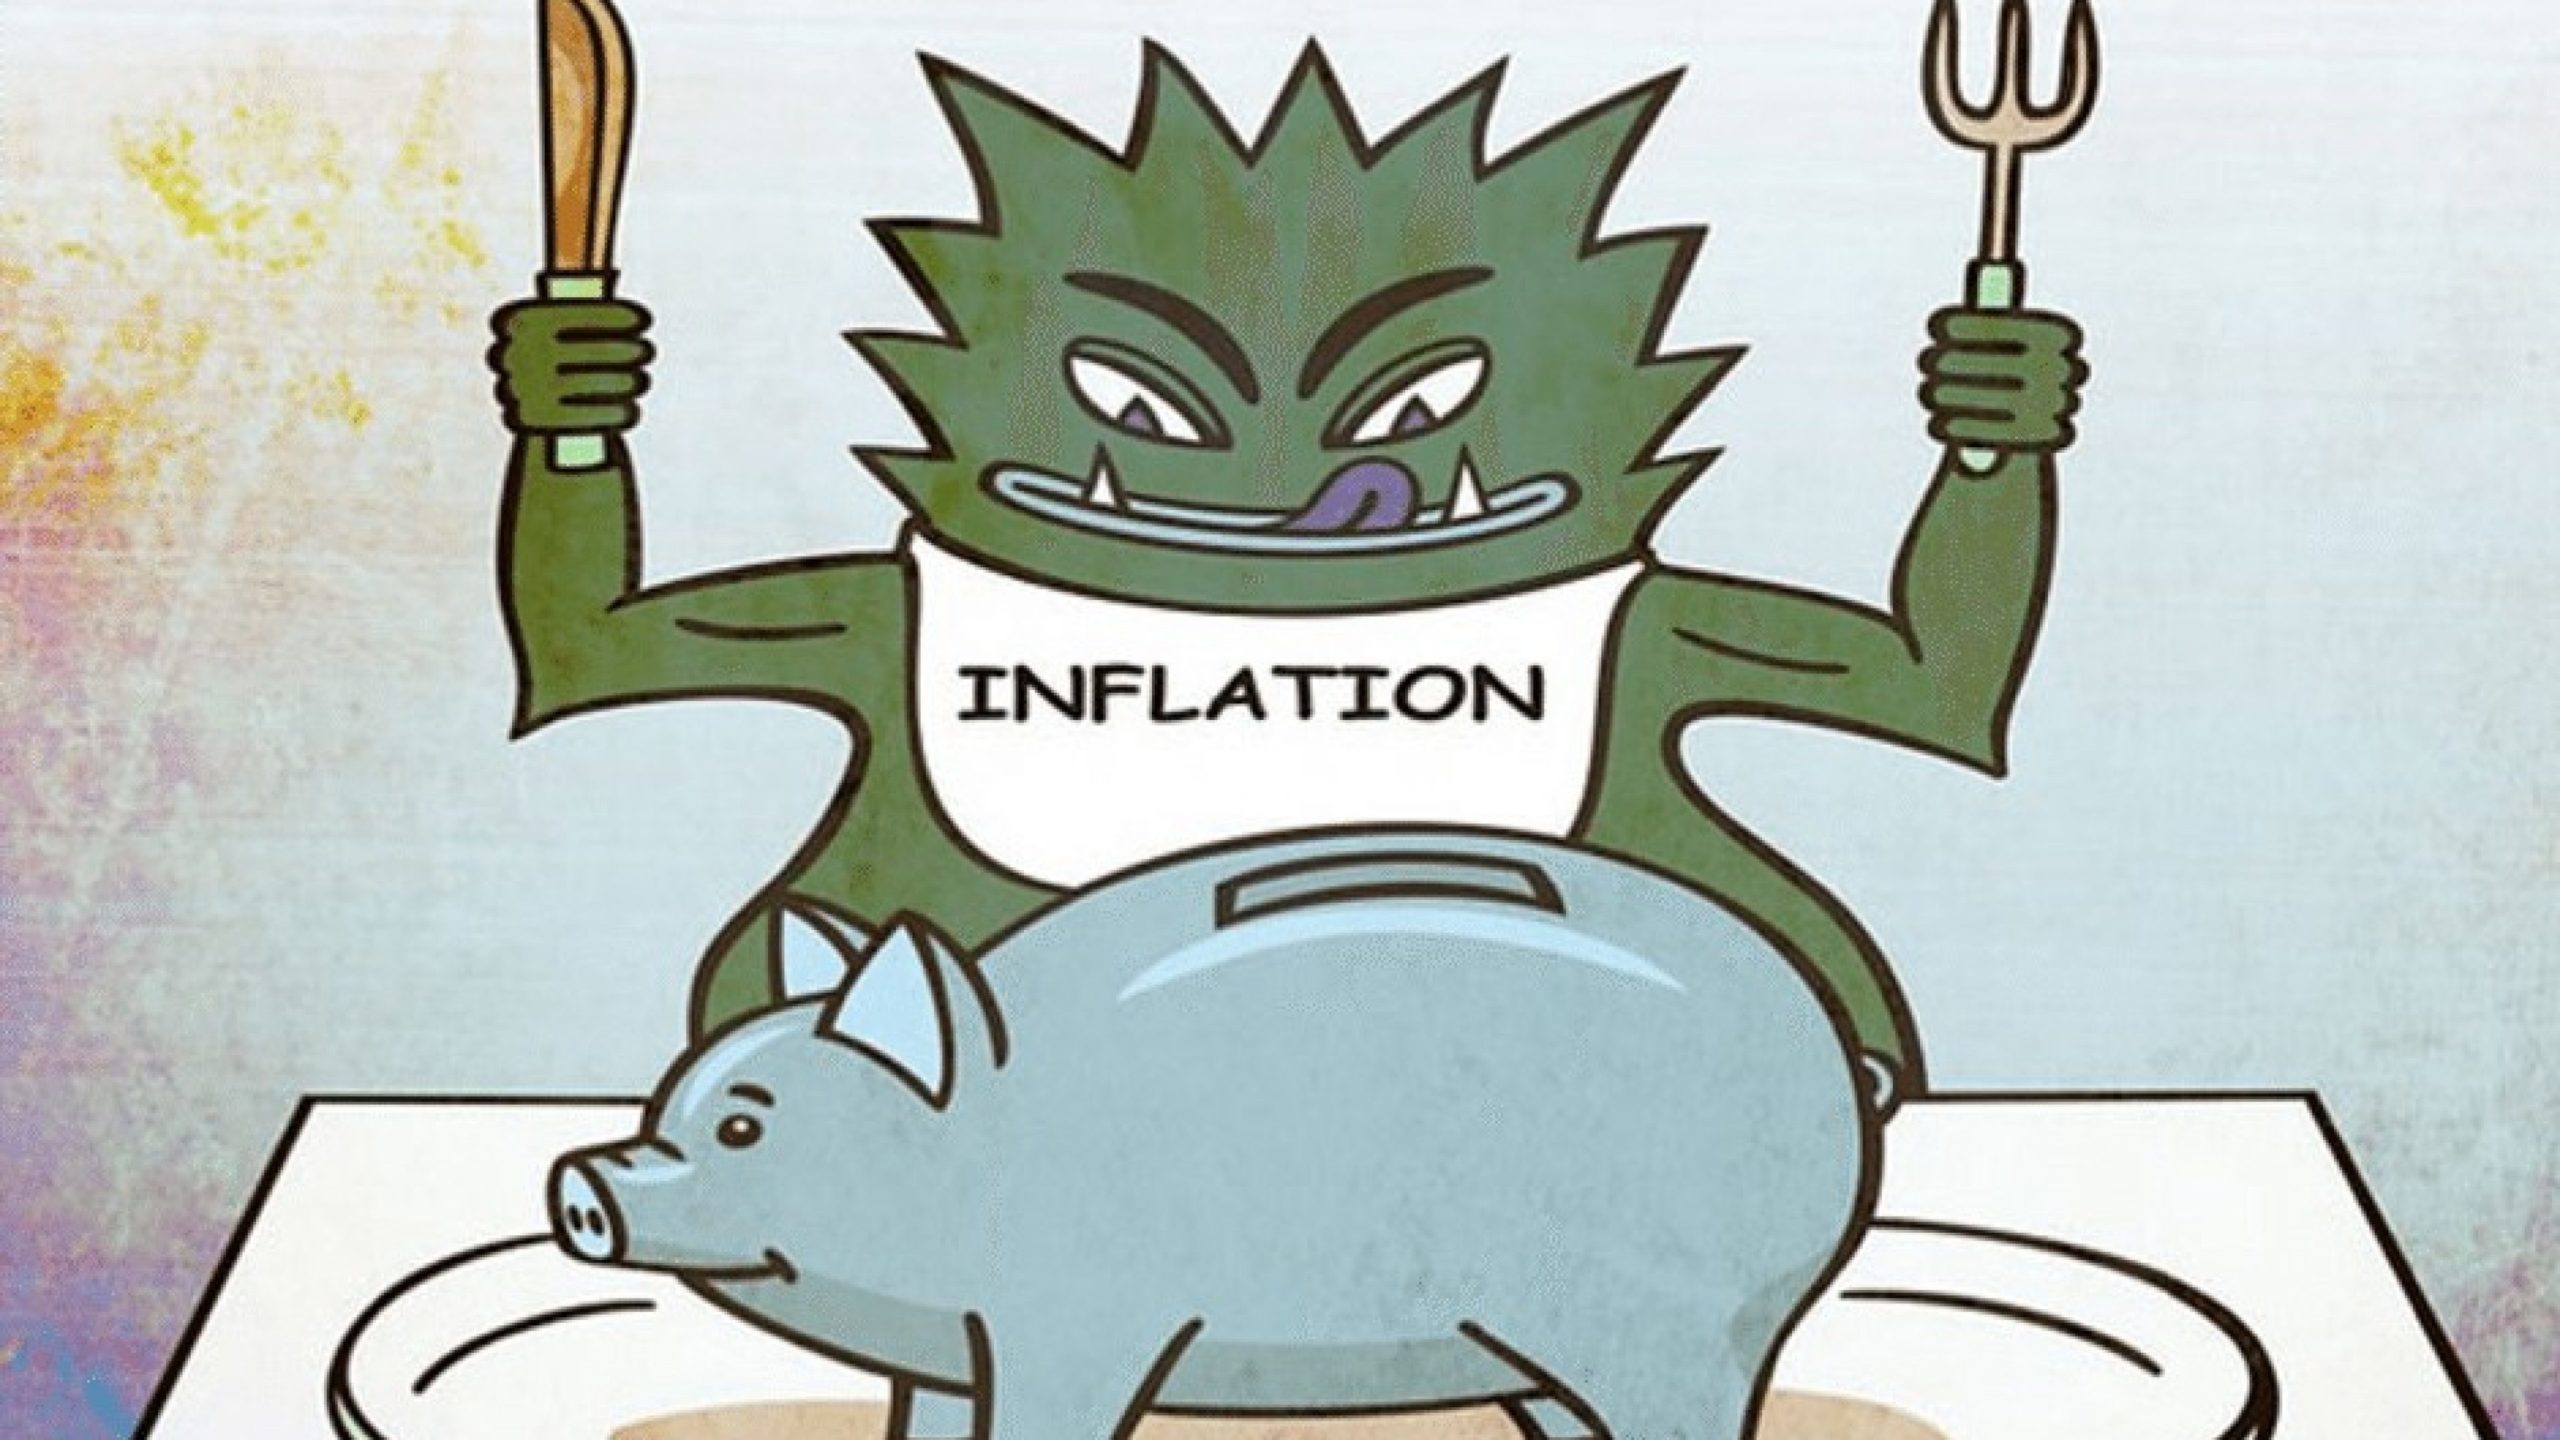 Regeringen och Riksbanken hanterar inflationen fel